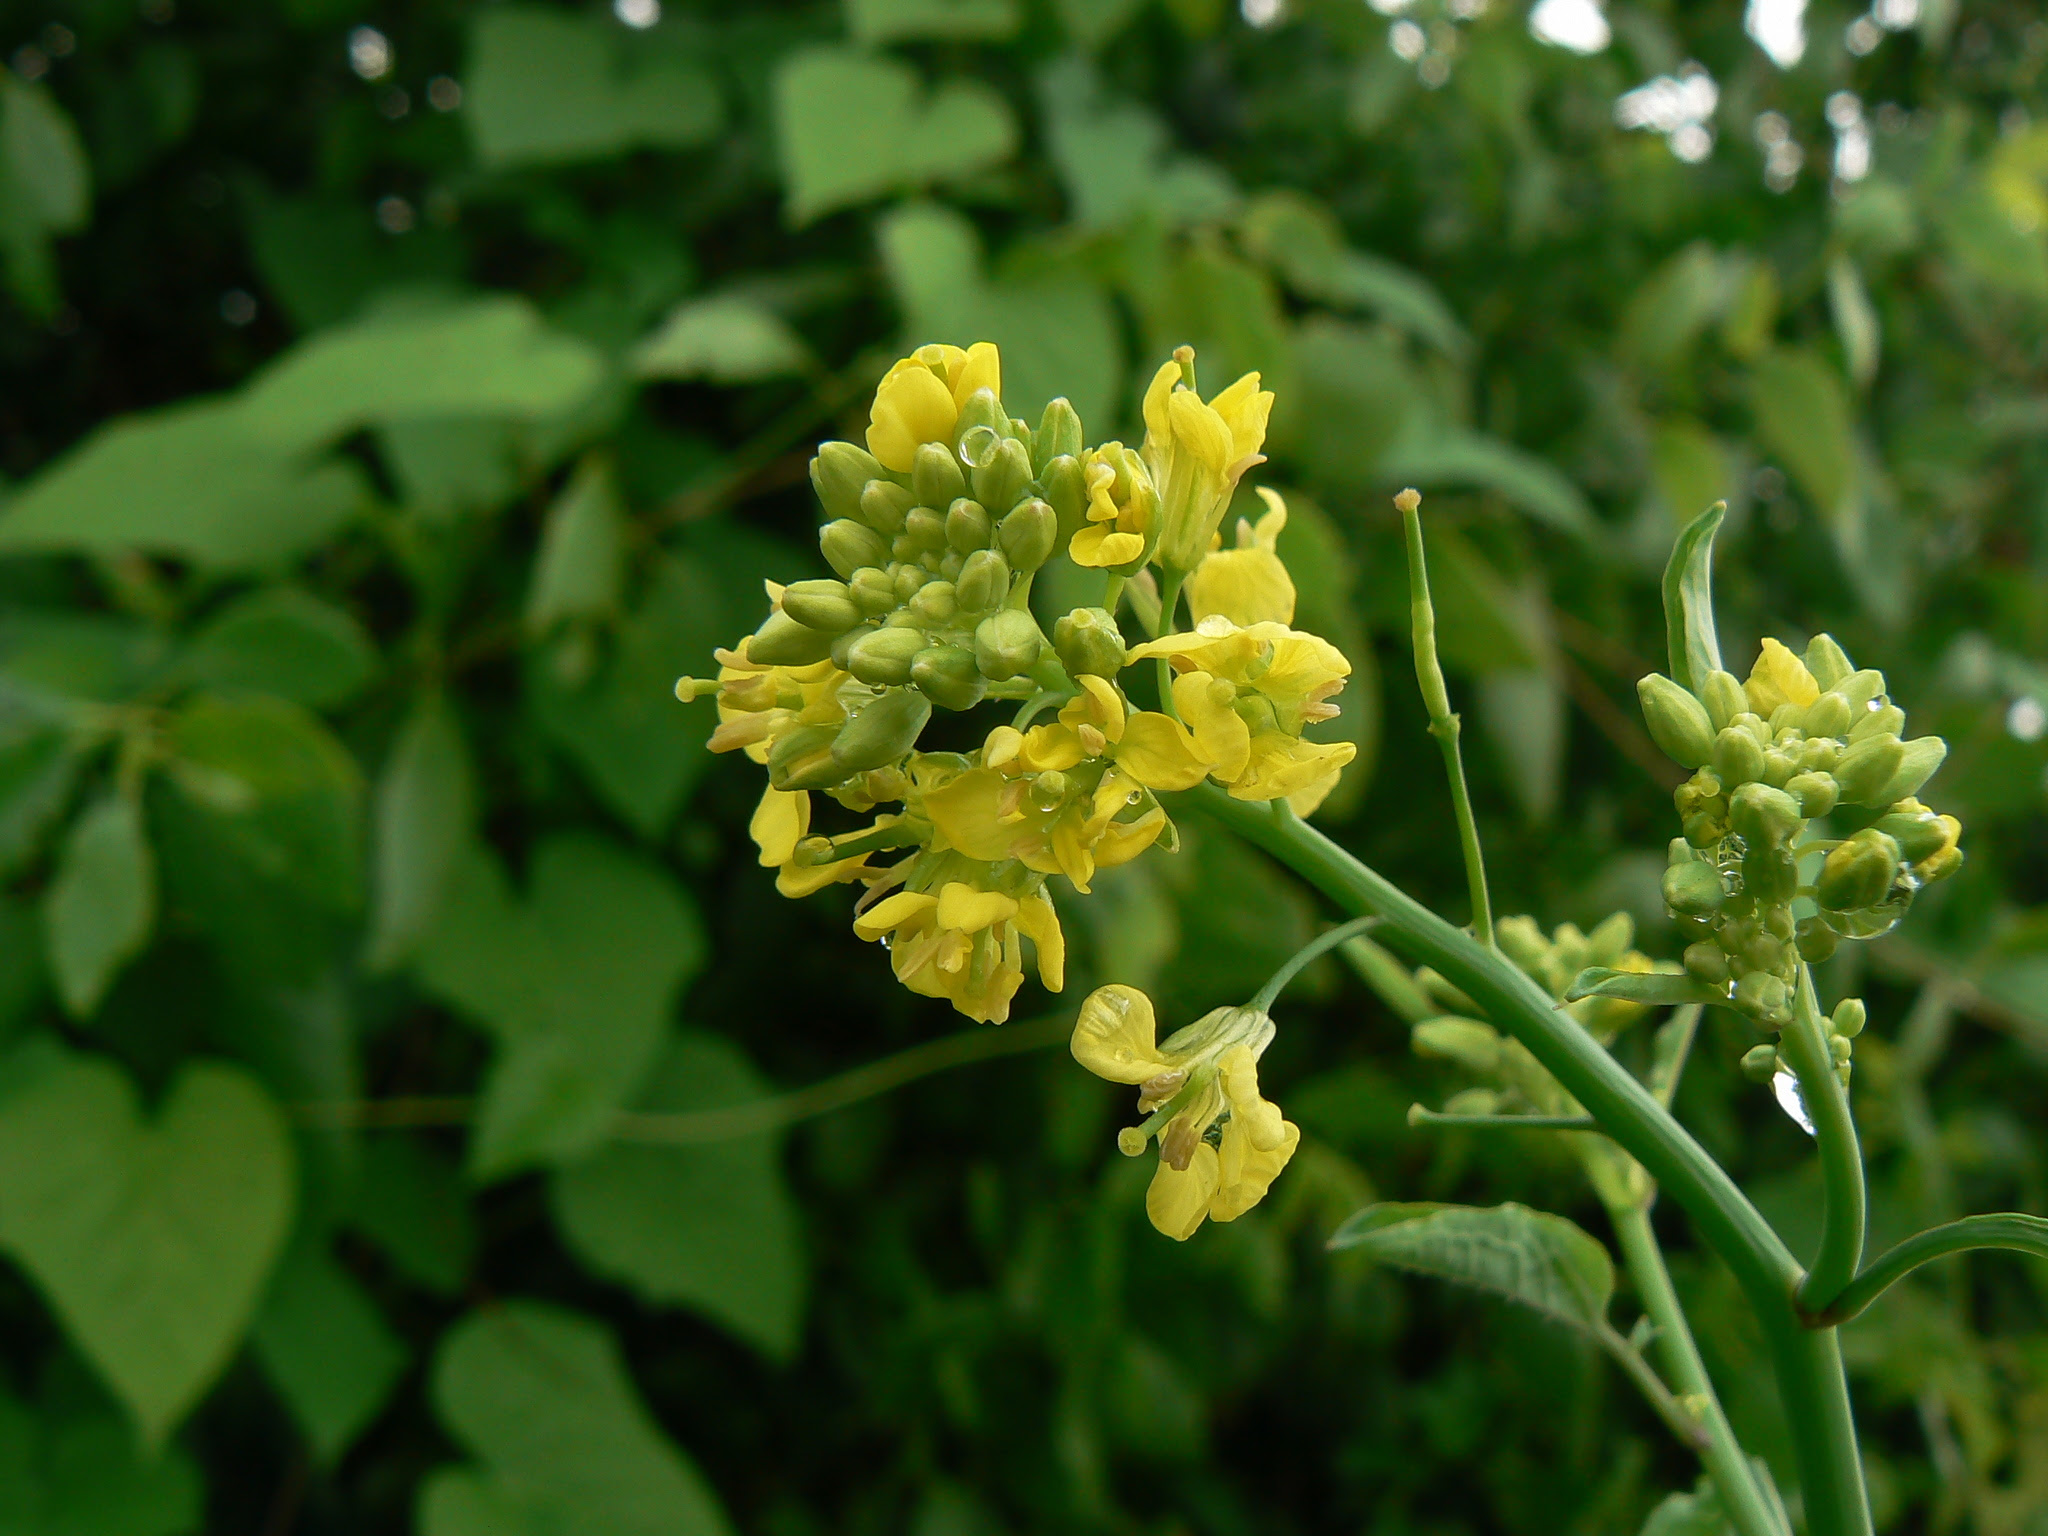 Brassica juncea (L.) Czern.